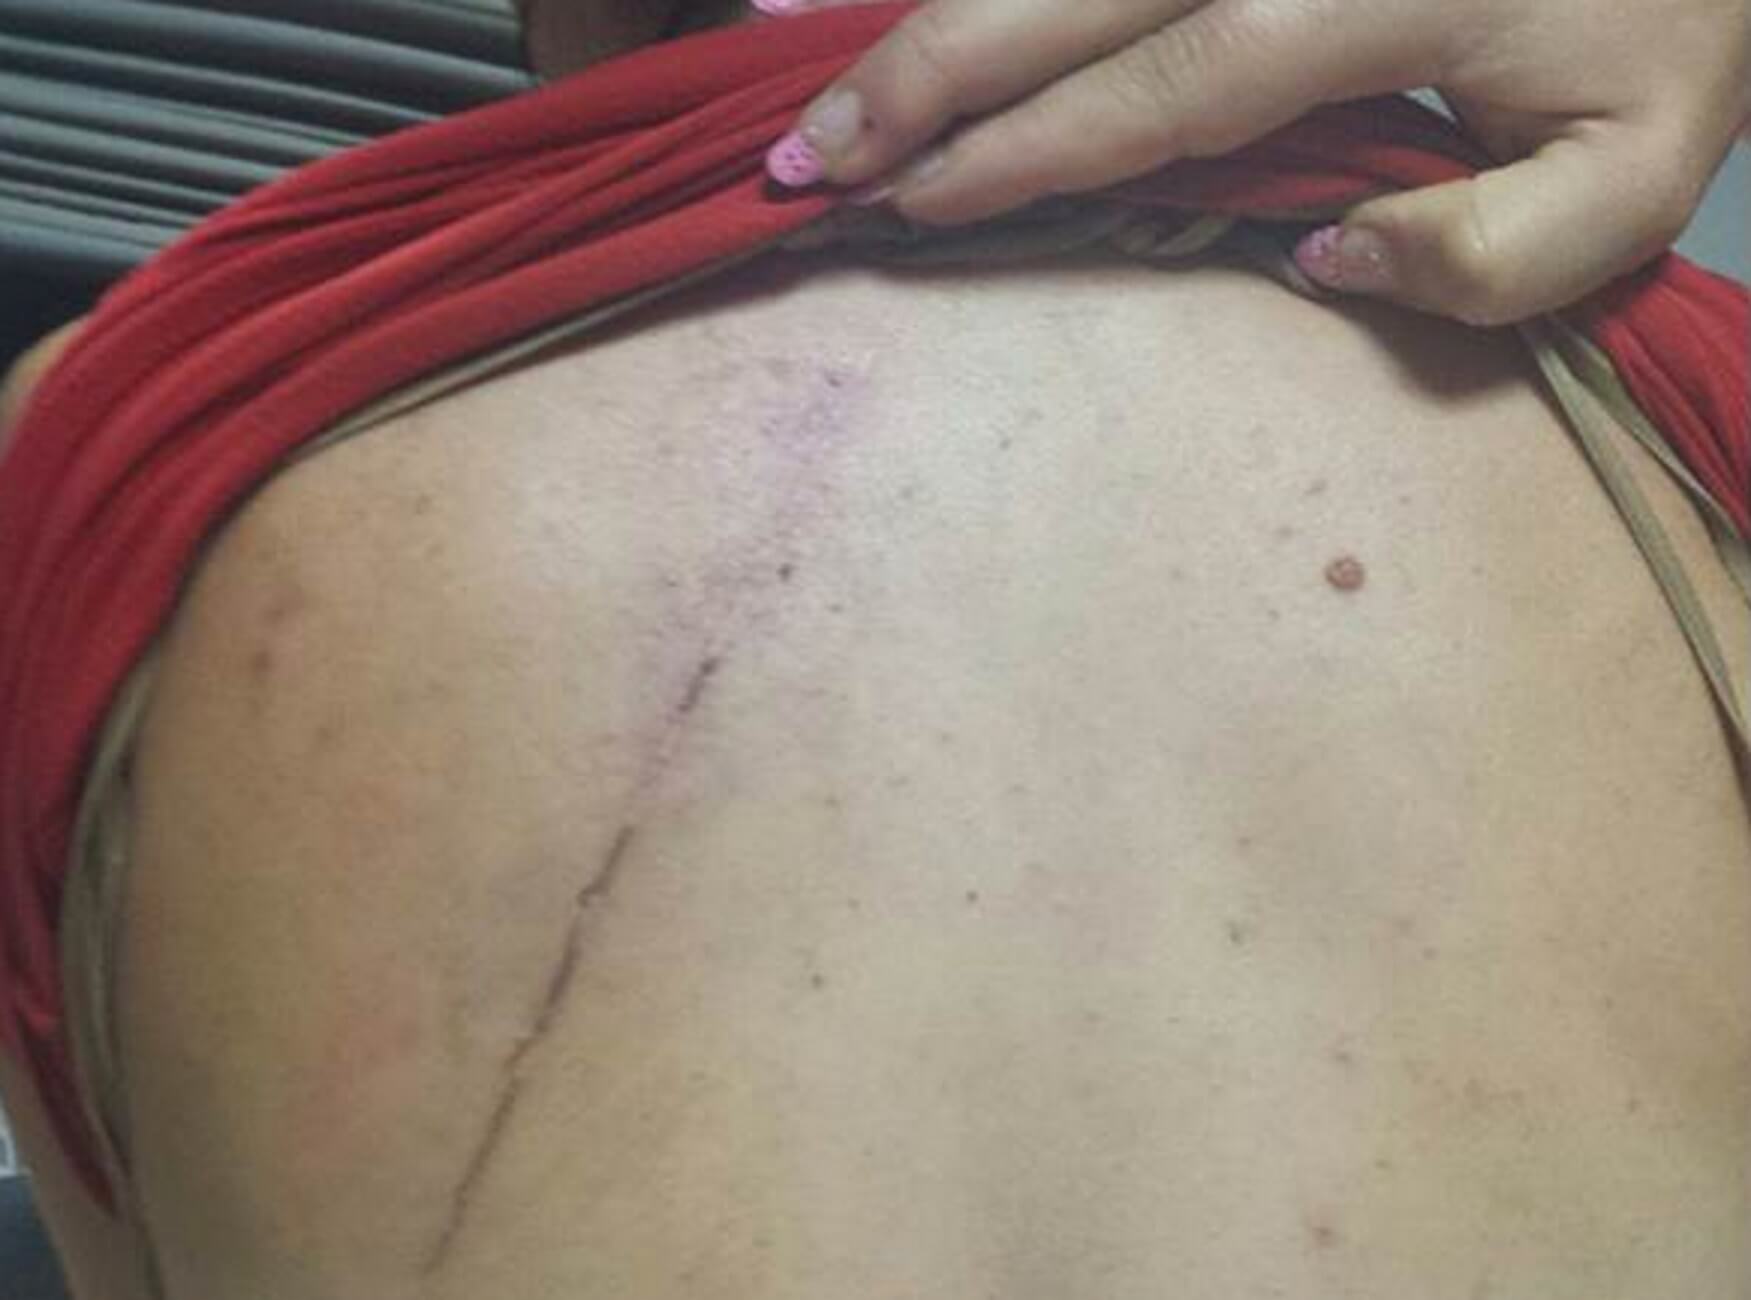 Ηράκλειο: Της έκοψε τα μαλλιά και τη βίασε – Ανατριχίλα από τα σημάδια της κακοποίησης στο σώμα της γυναίκας [pics]